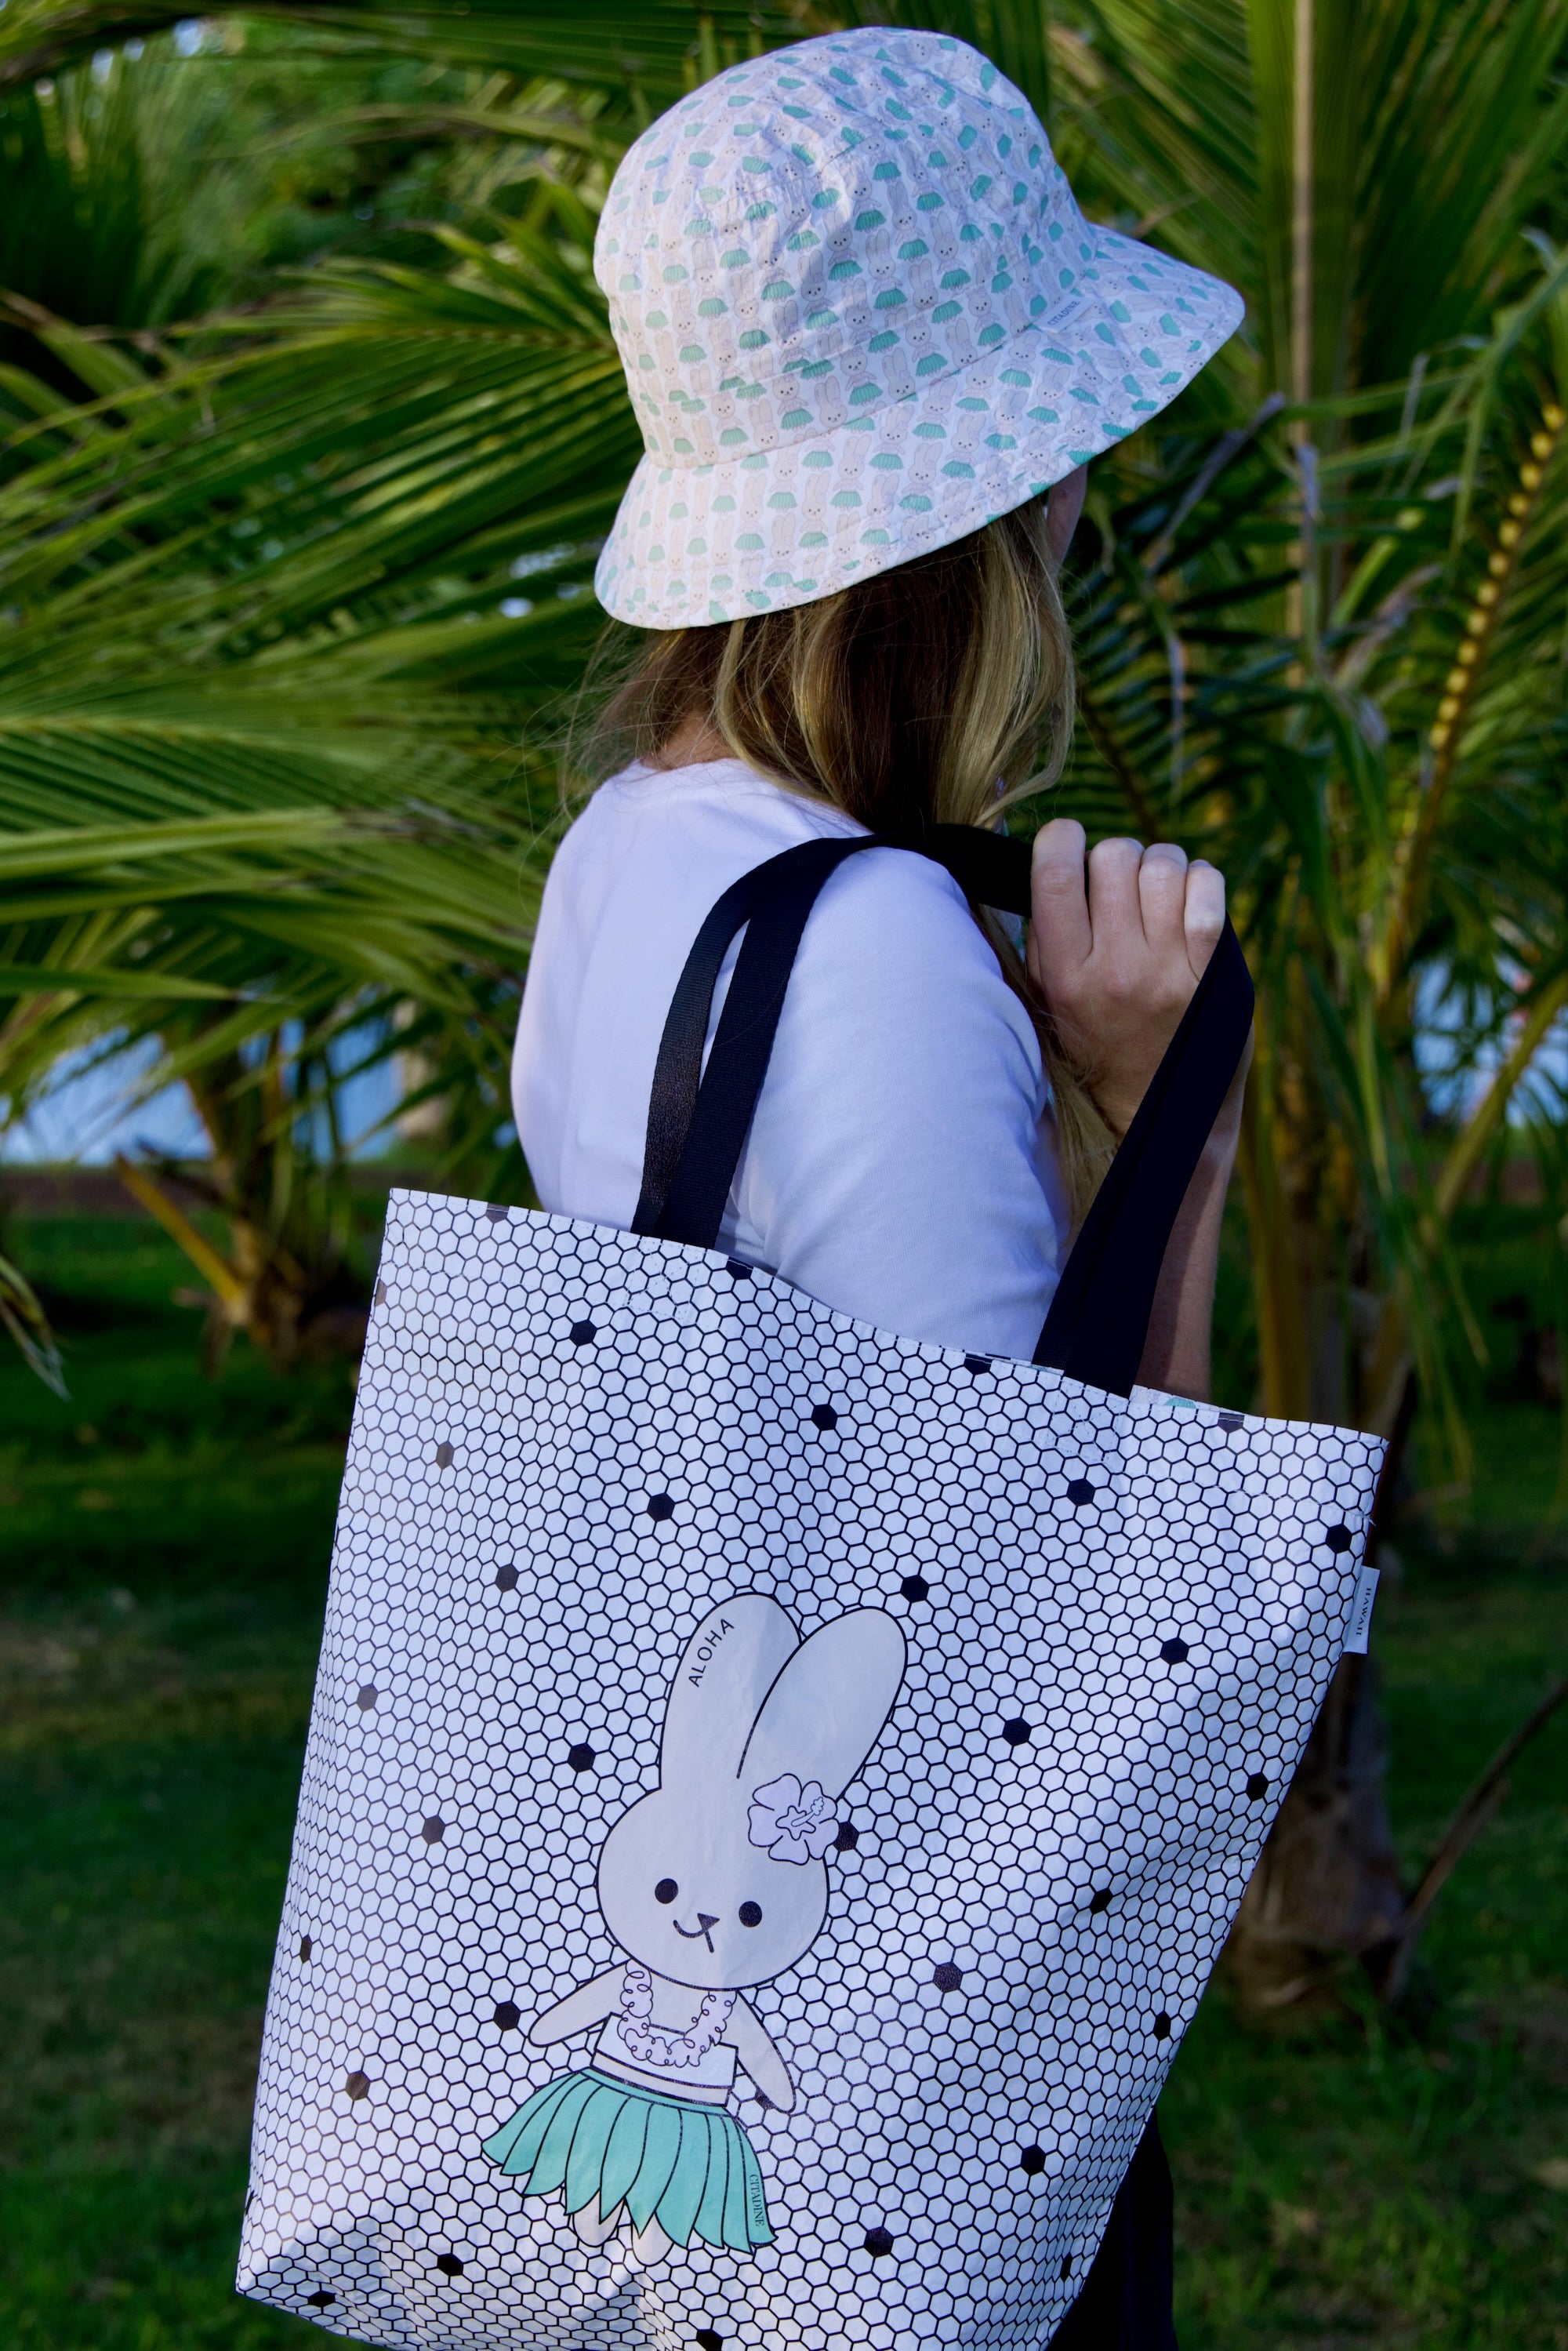 Cute Summer Bucket Hats | Bucket Hat Atasha Rabbit Pattern | Citadine